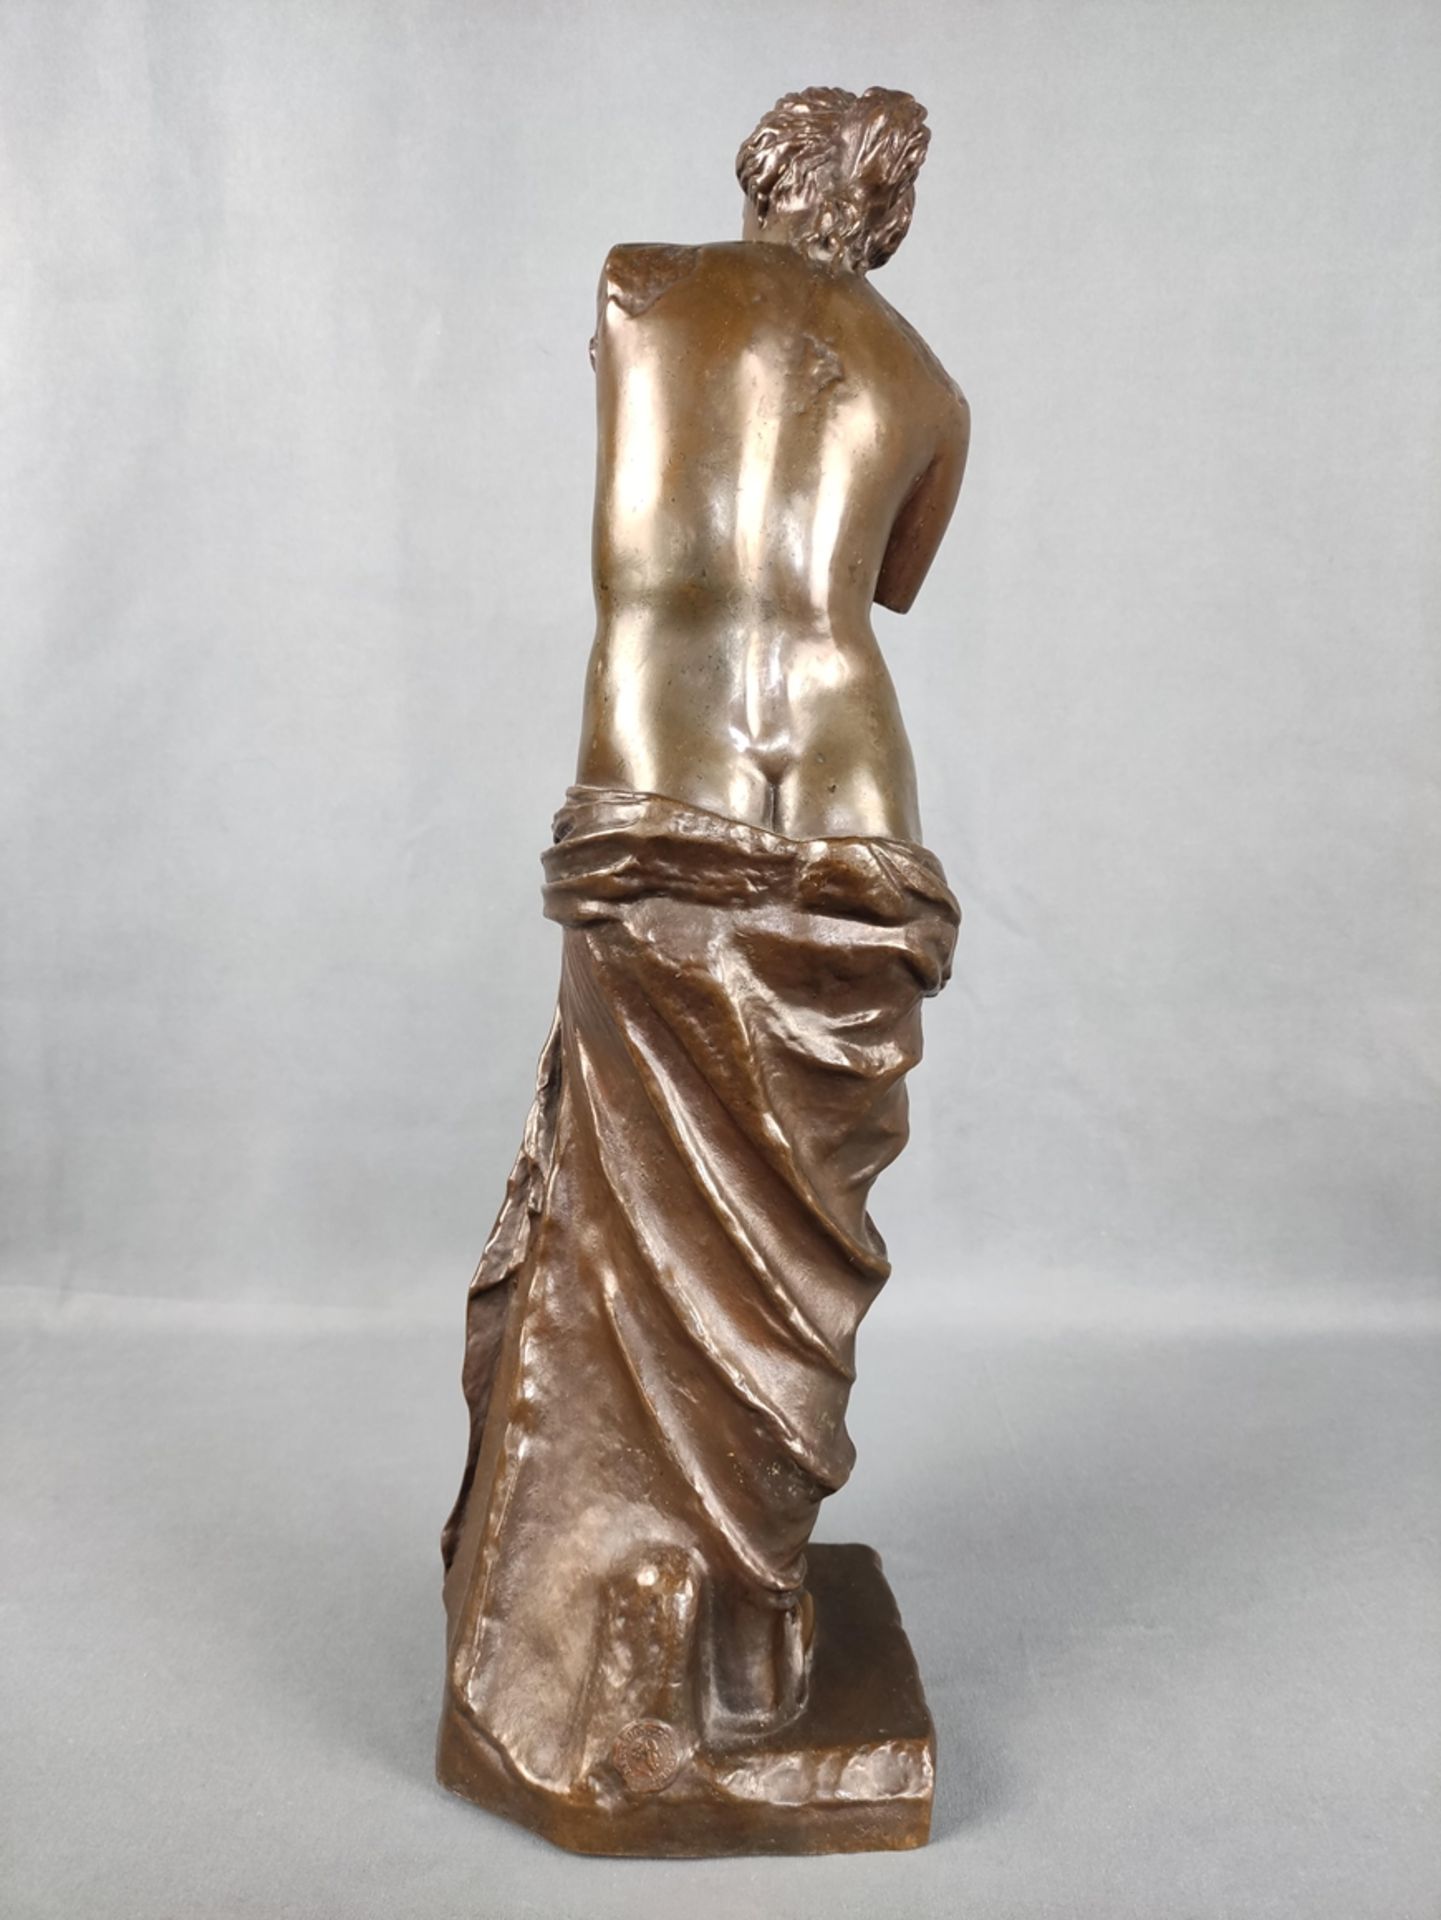 Französischer Künstler (19. Jahrhundert) "Venus von Milo", Bronzeplastik nach dem griechischen Orig - Bild 3 aus 5